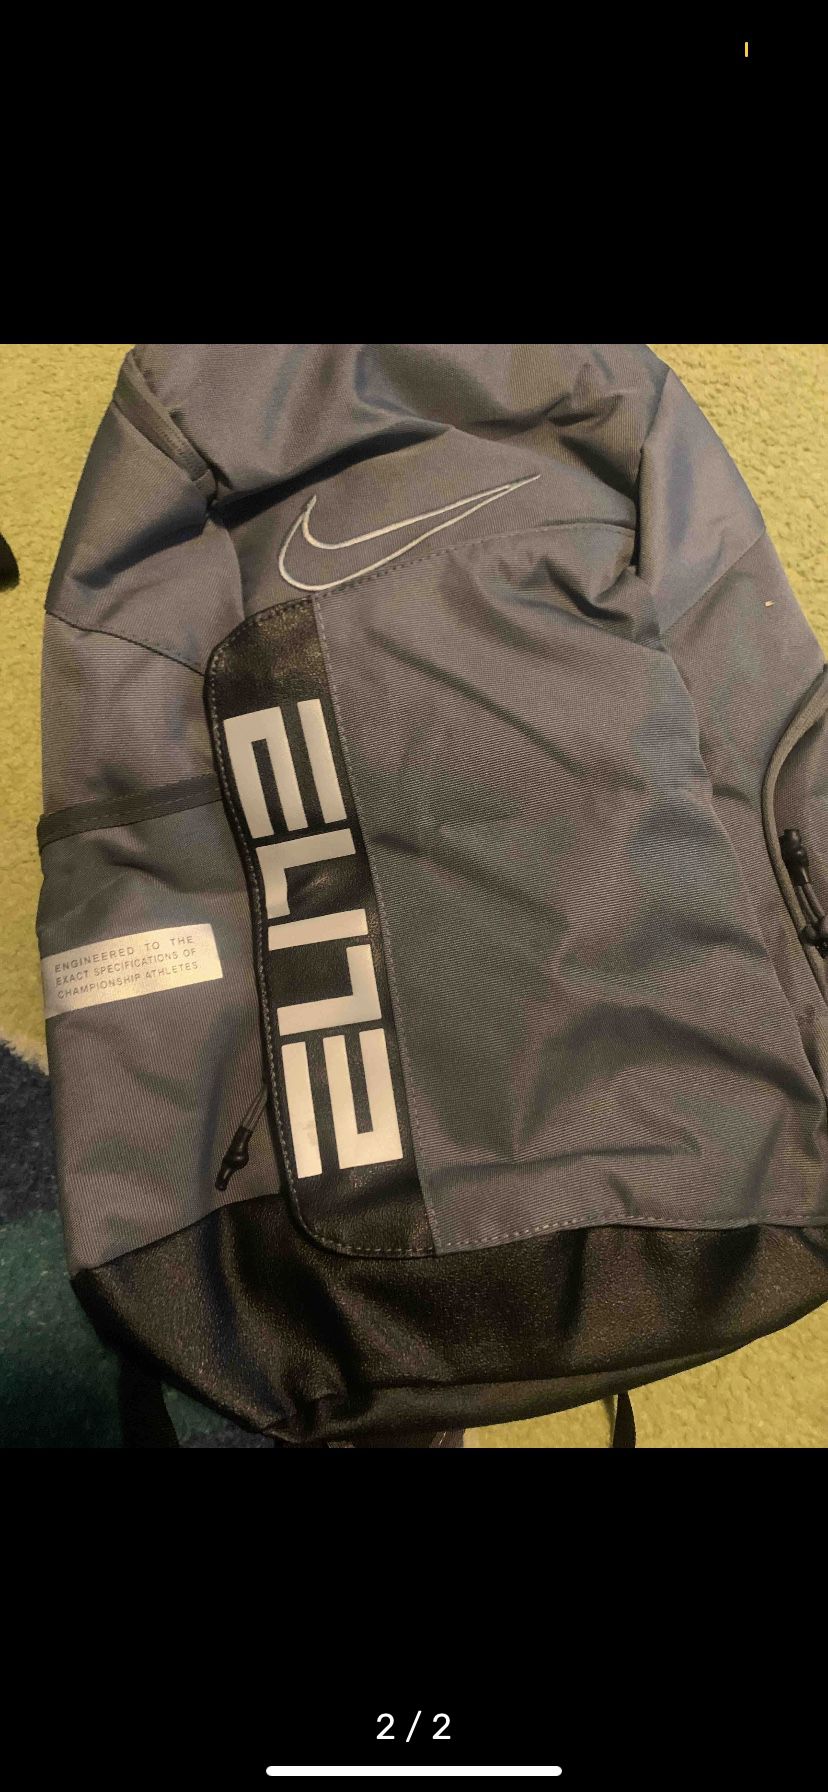 Brand new nike elite backpack 